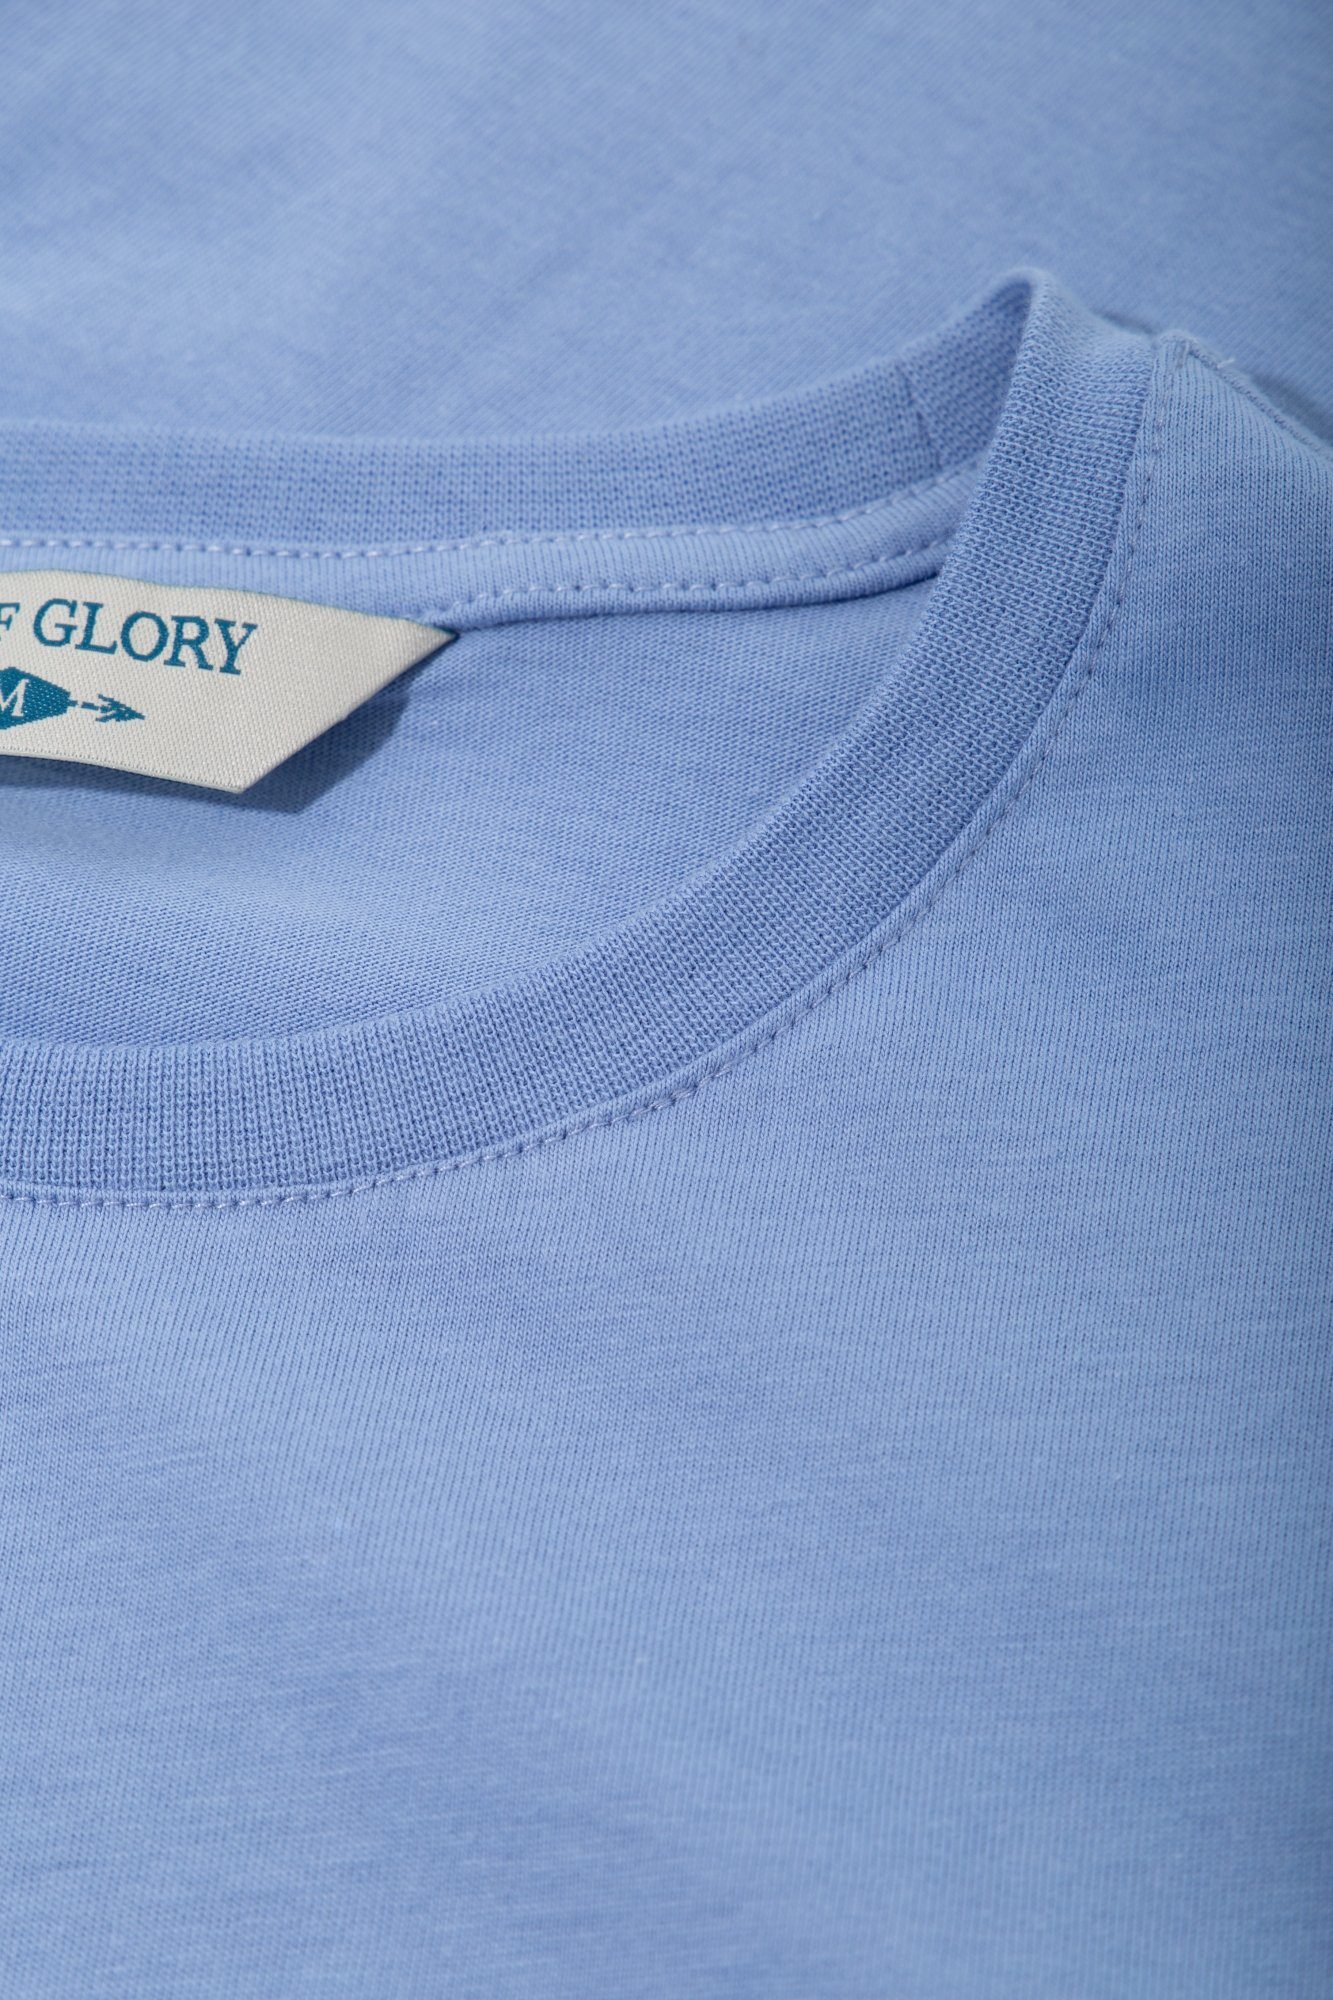 Glory Way of klassischem Rundhals T-Shirt hellblau mit